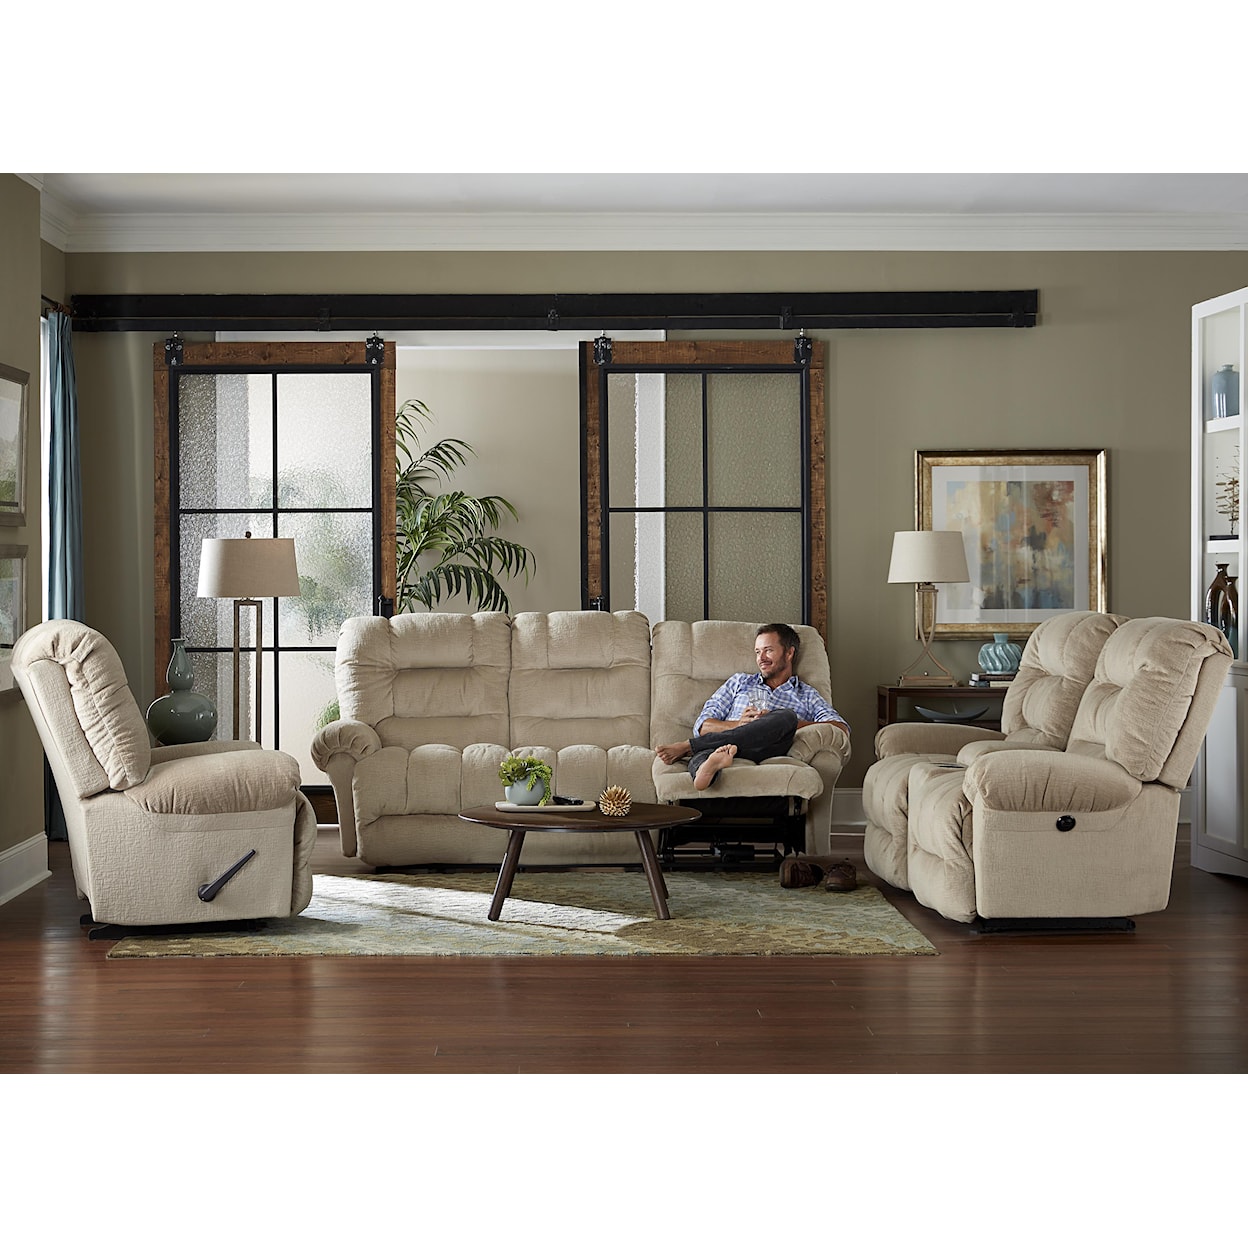 Bravo Furniture Seger Reclining Sofa